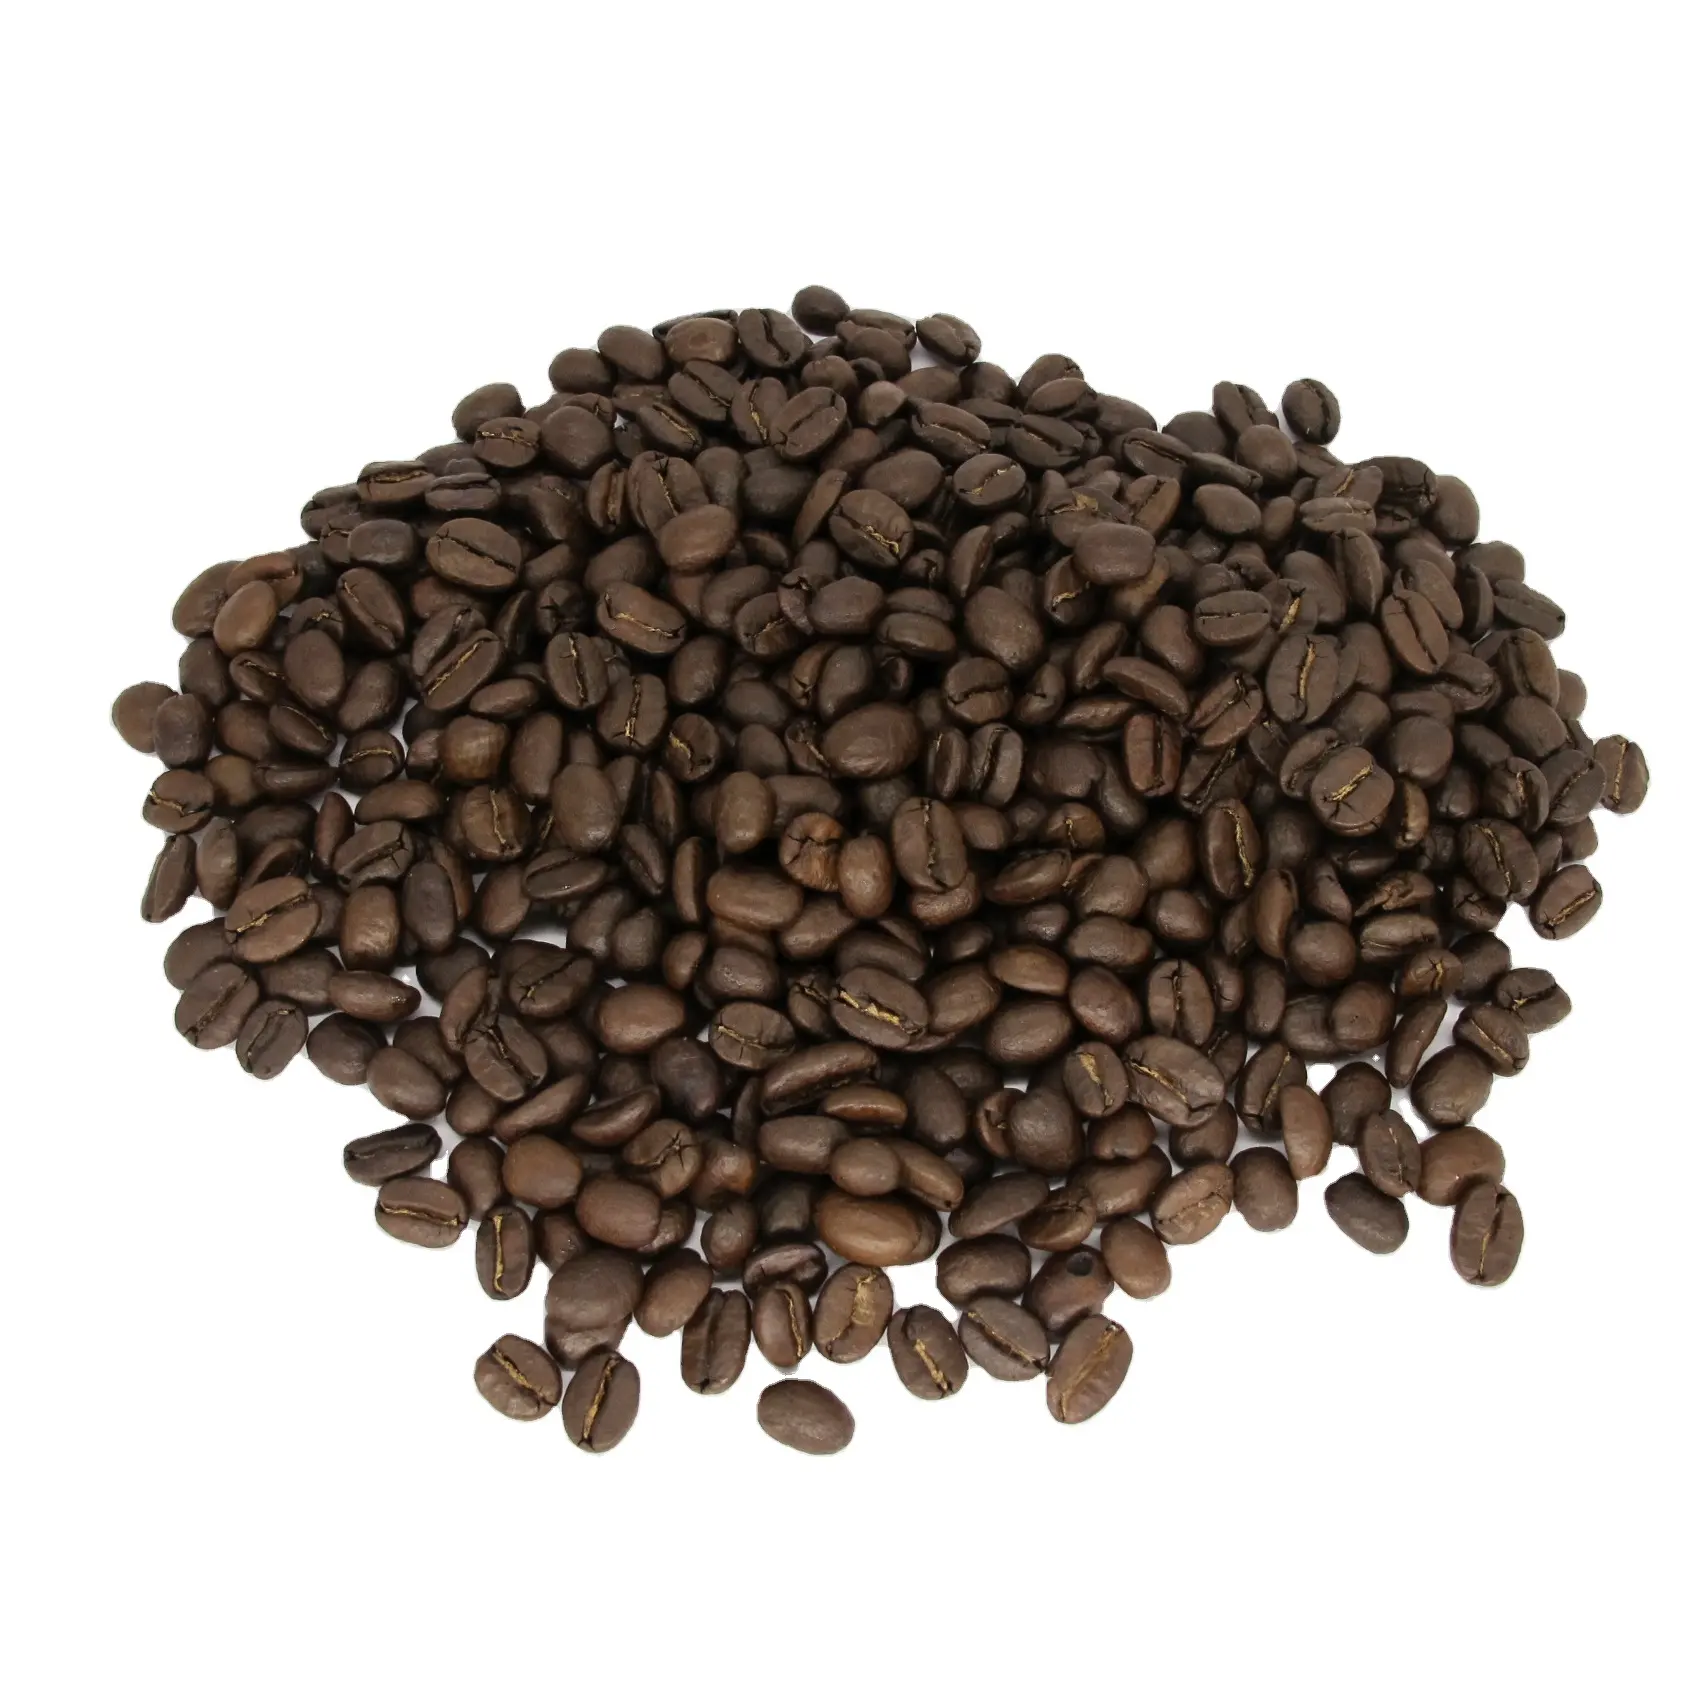 Высококачественные жареные кофейные зерна из арабики, Коста-Рики, тара